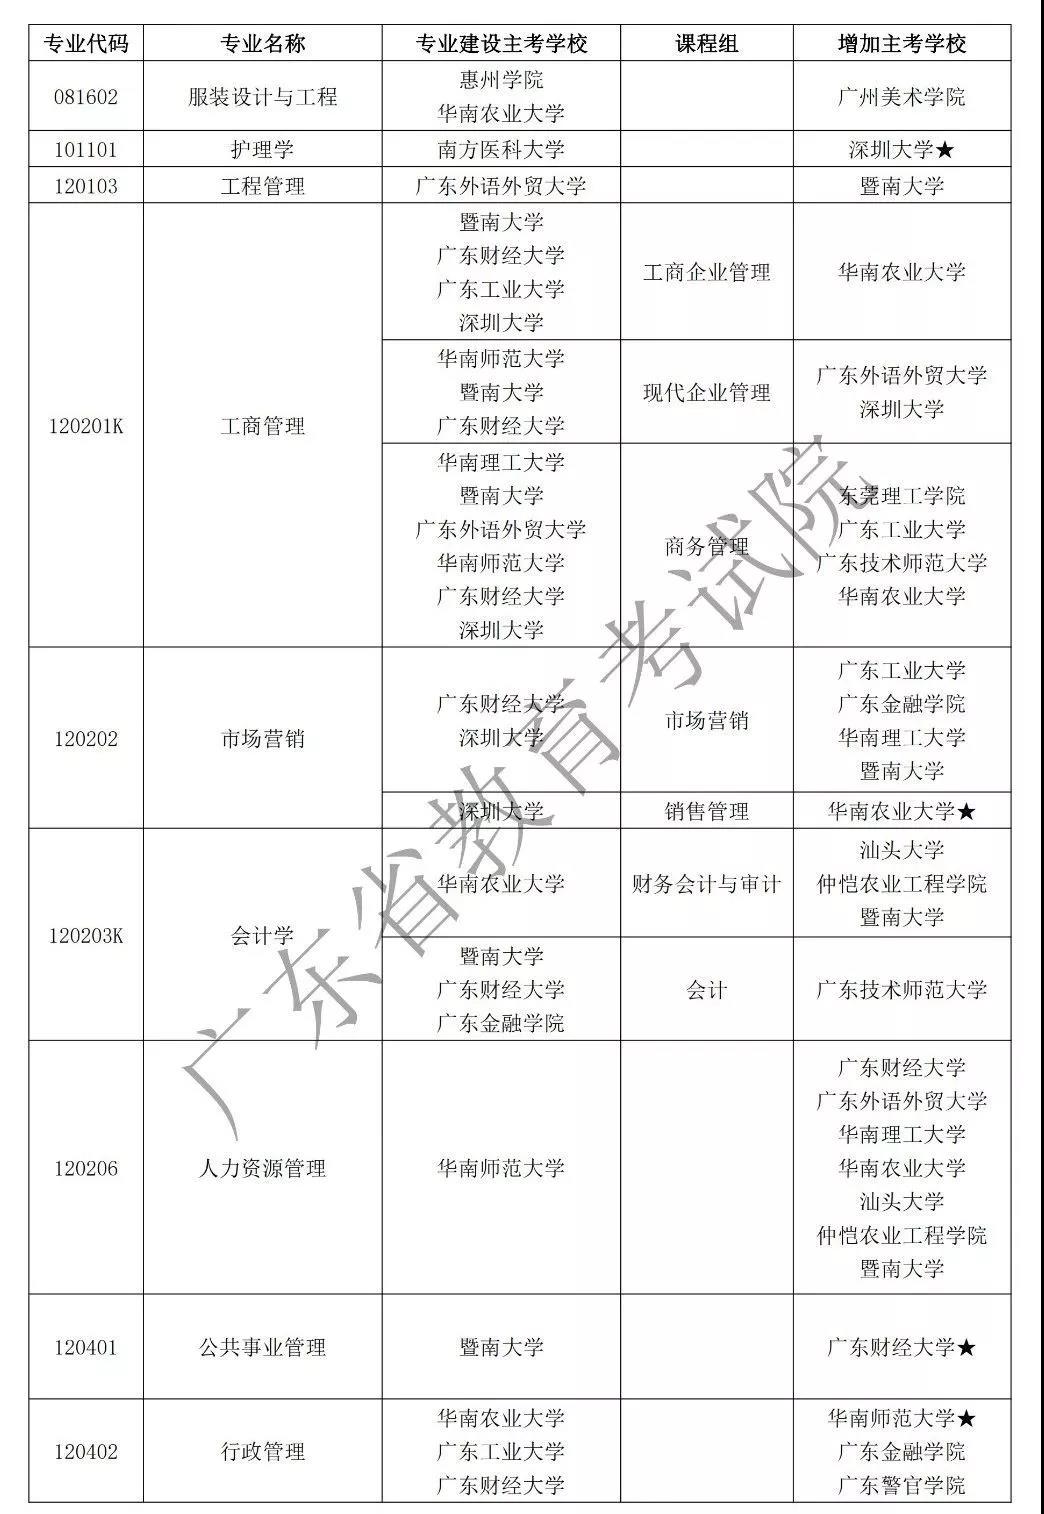 广东省高等教育成教部分专业增加主考学校通知